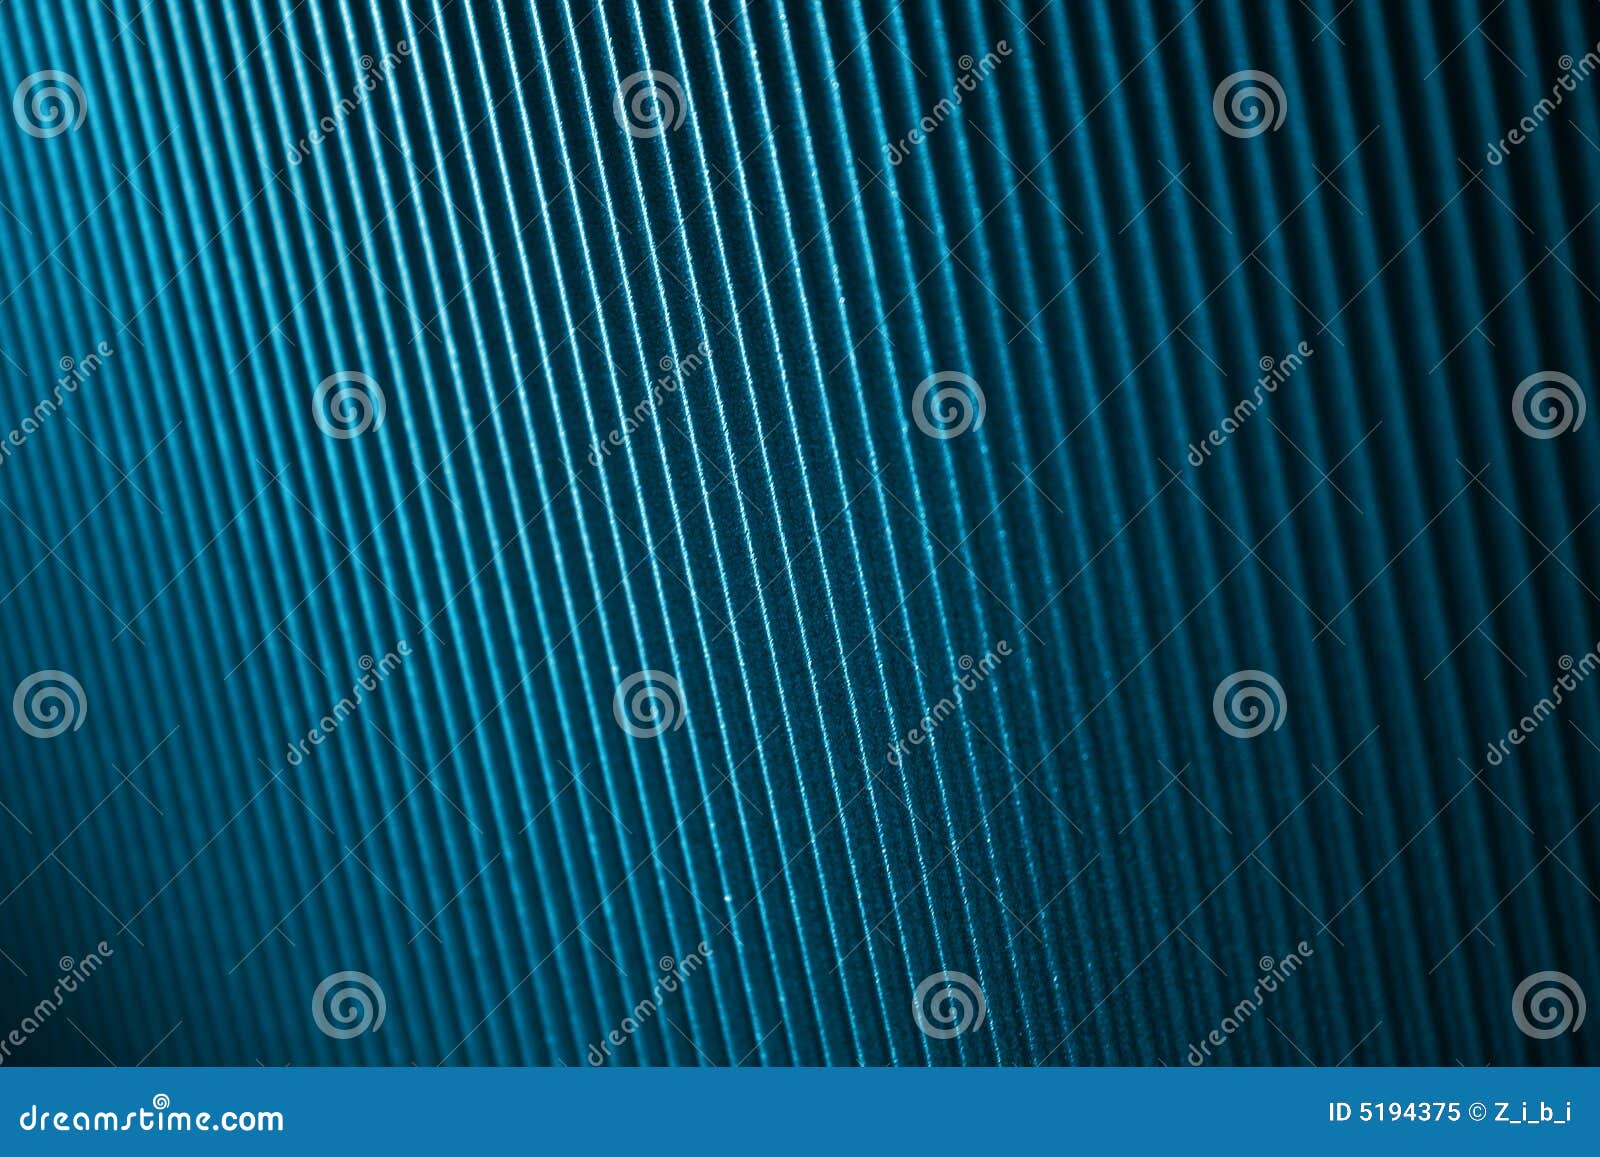 Metallic background stock image. Image of repeated, metallic - 5194375